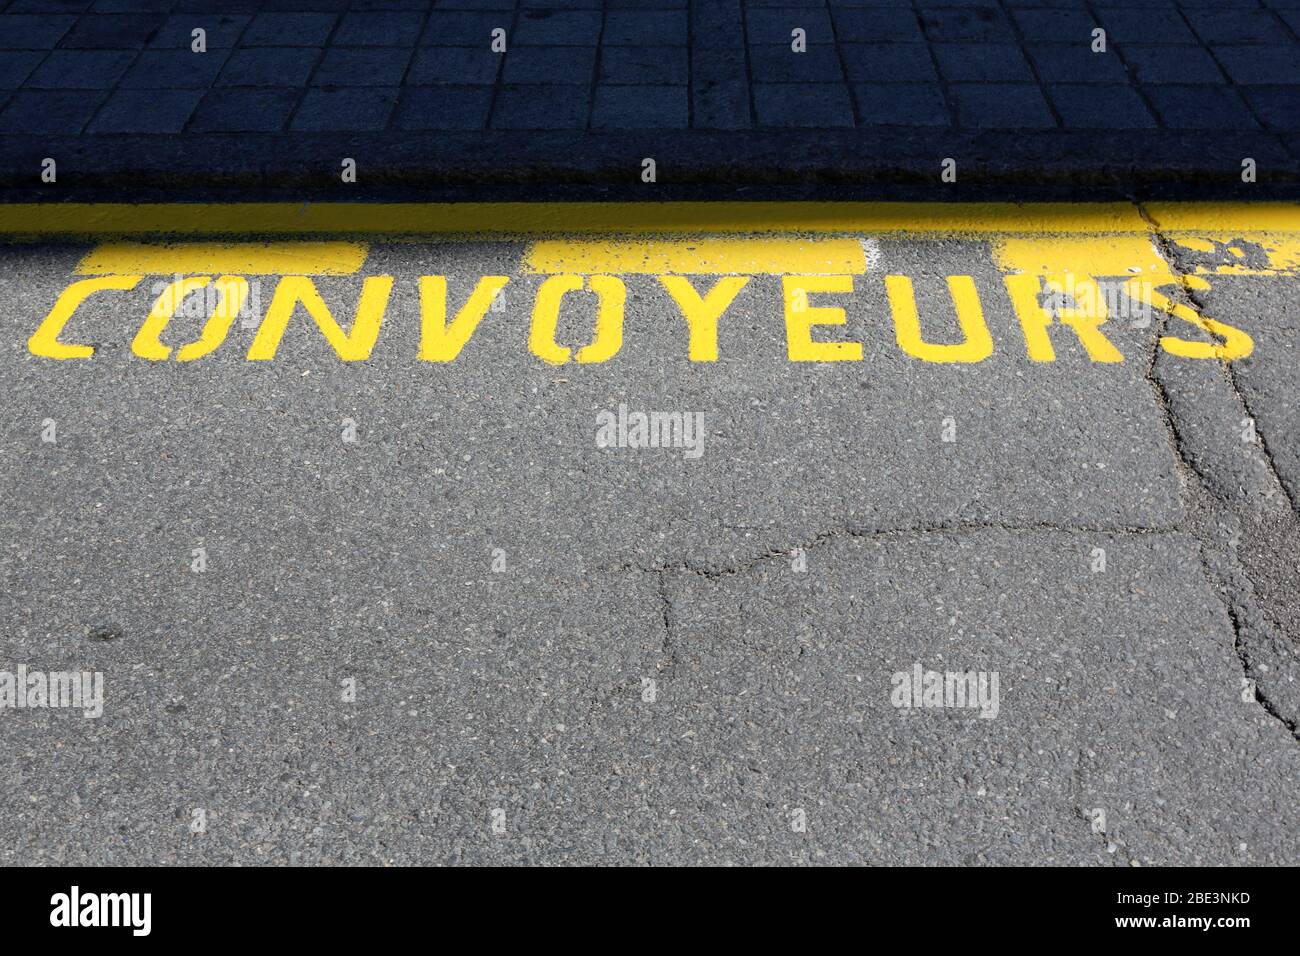 Convoyeurs. Inscription en peinture jaune sur une route. Saint-Gervais-les-Bains. Haute-Savoie. France. Stock Photo